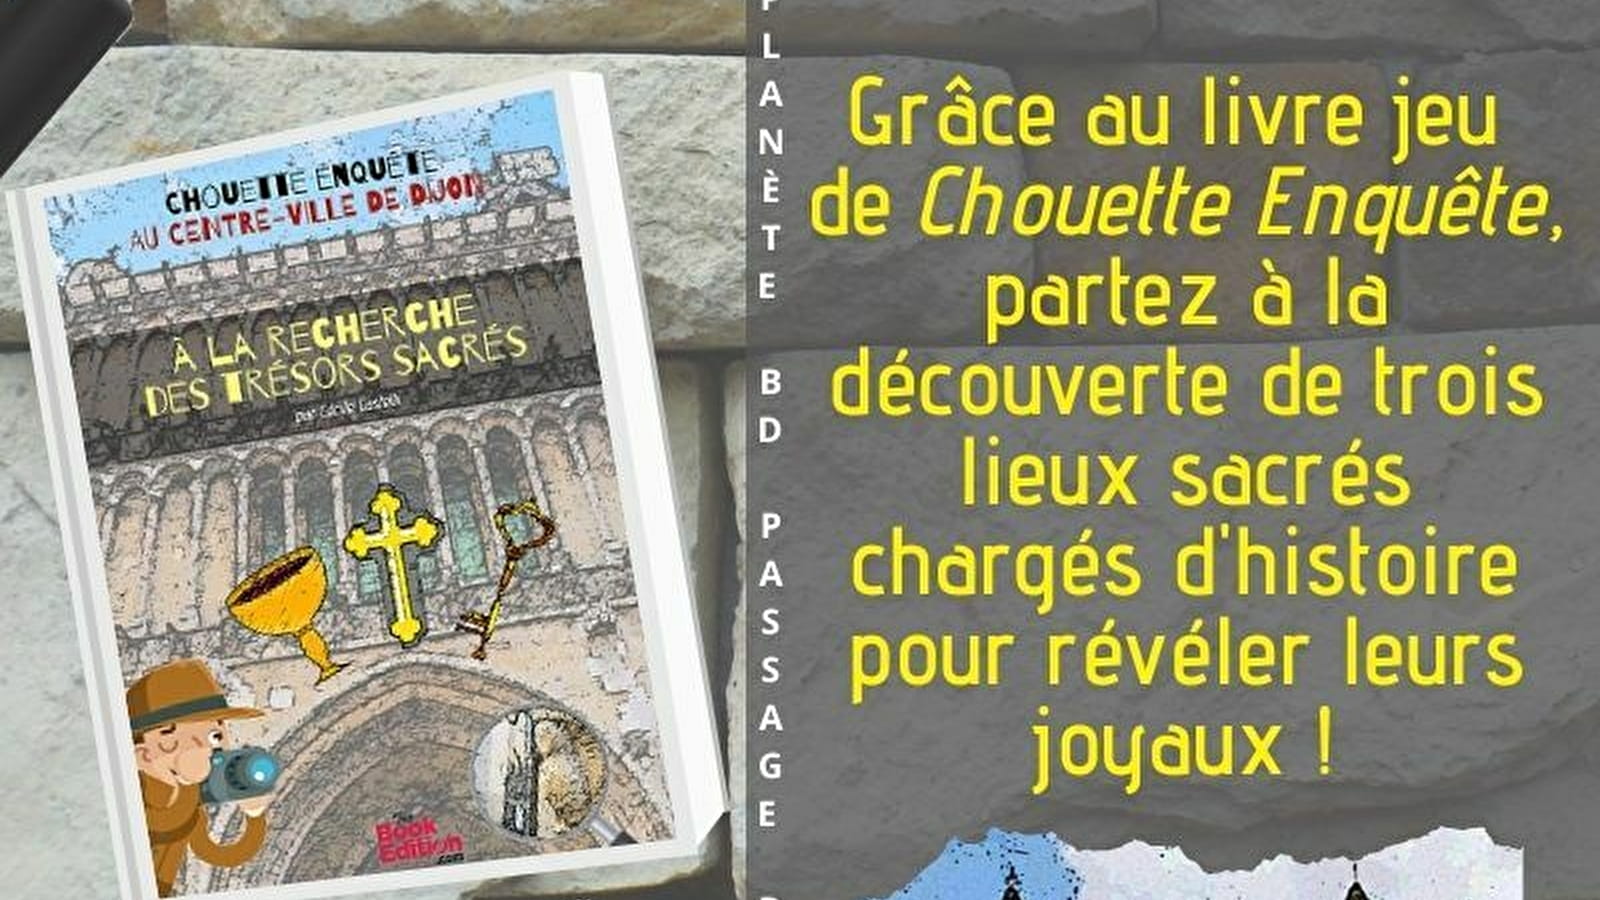 Chasse aux trésors sacrés au centre-ville de Dijon